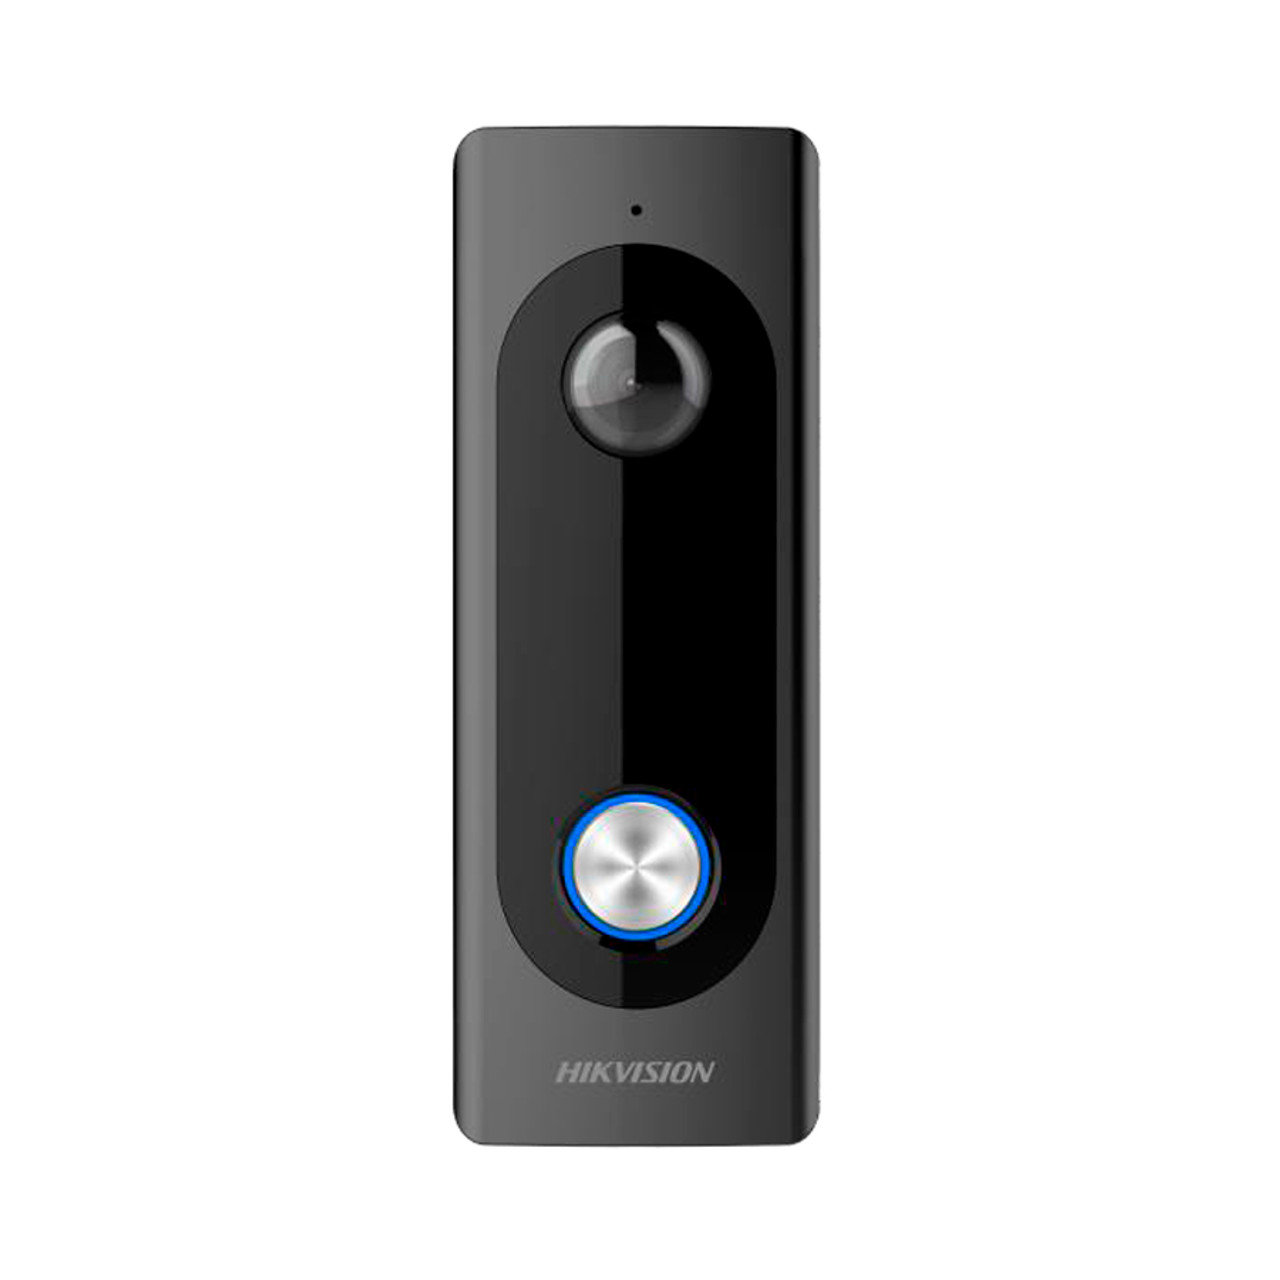 hikvision wireless doorbell